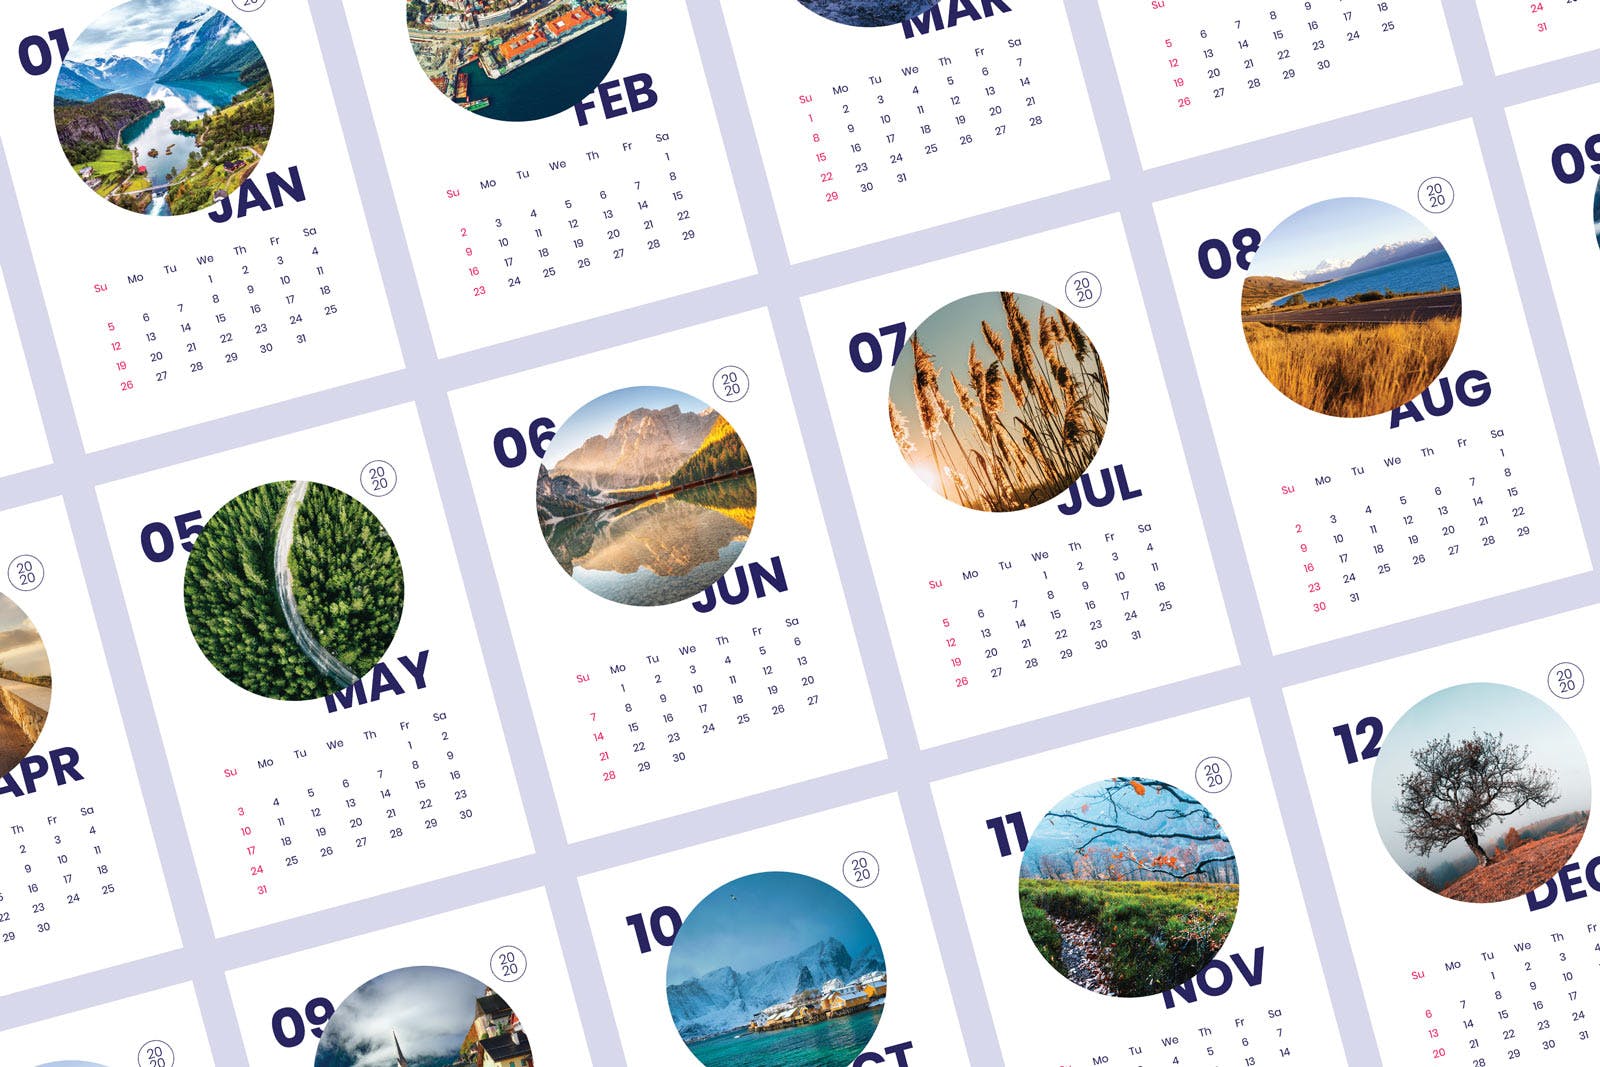 2020年风景日历年历设计模板 Calendar插图(2)